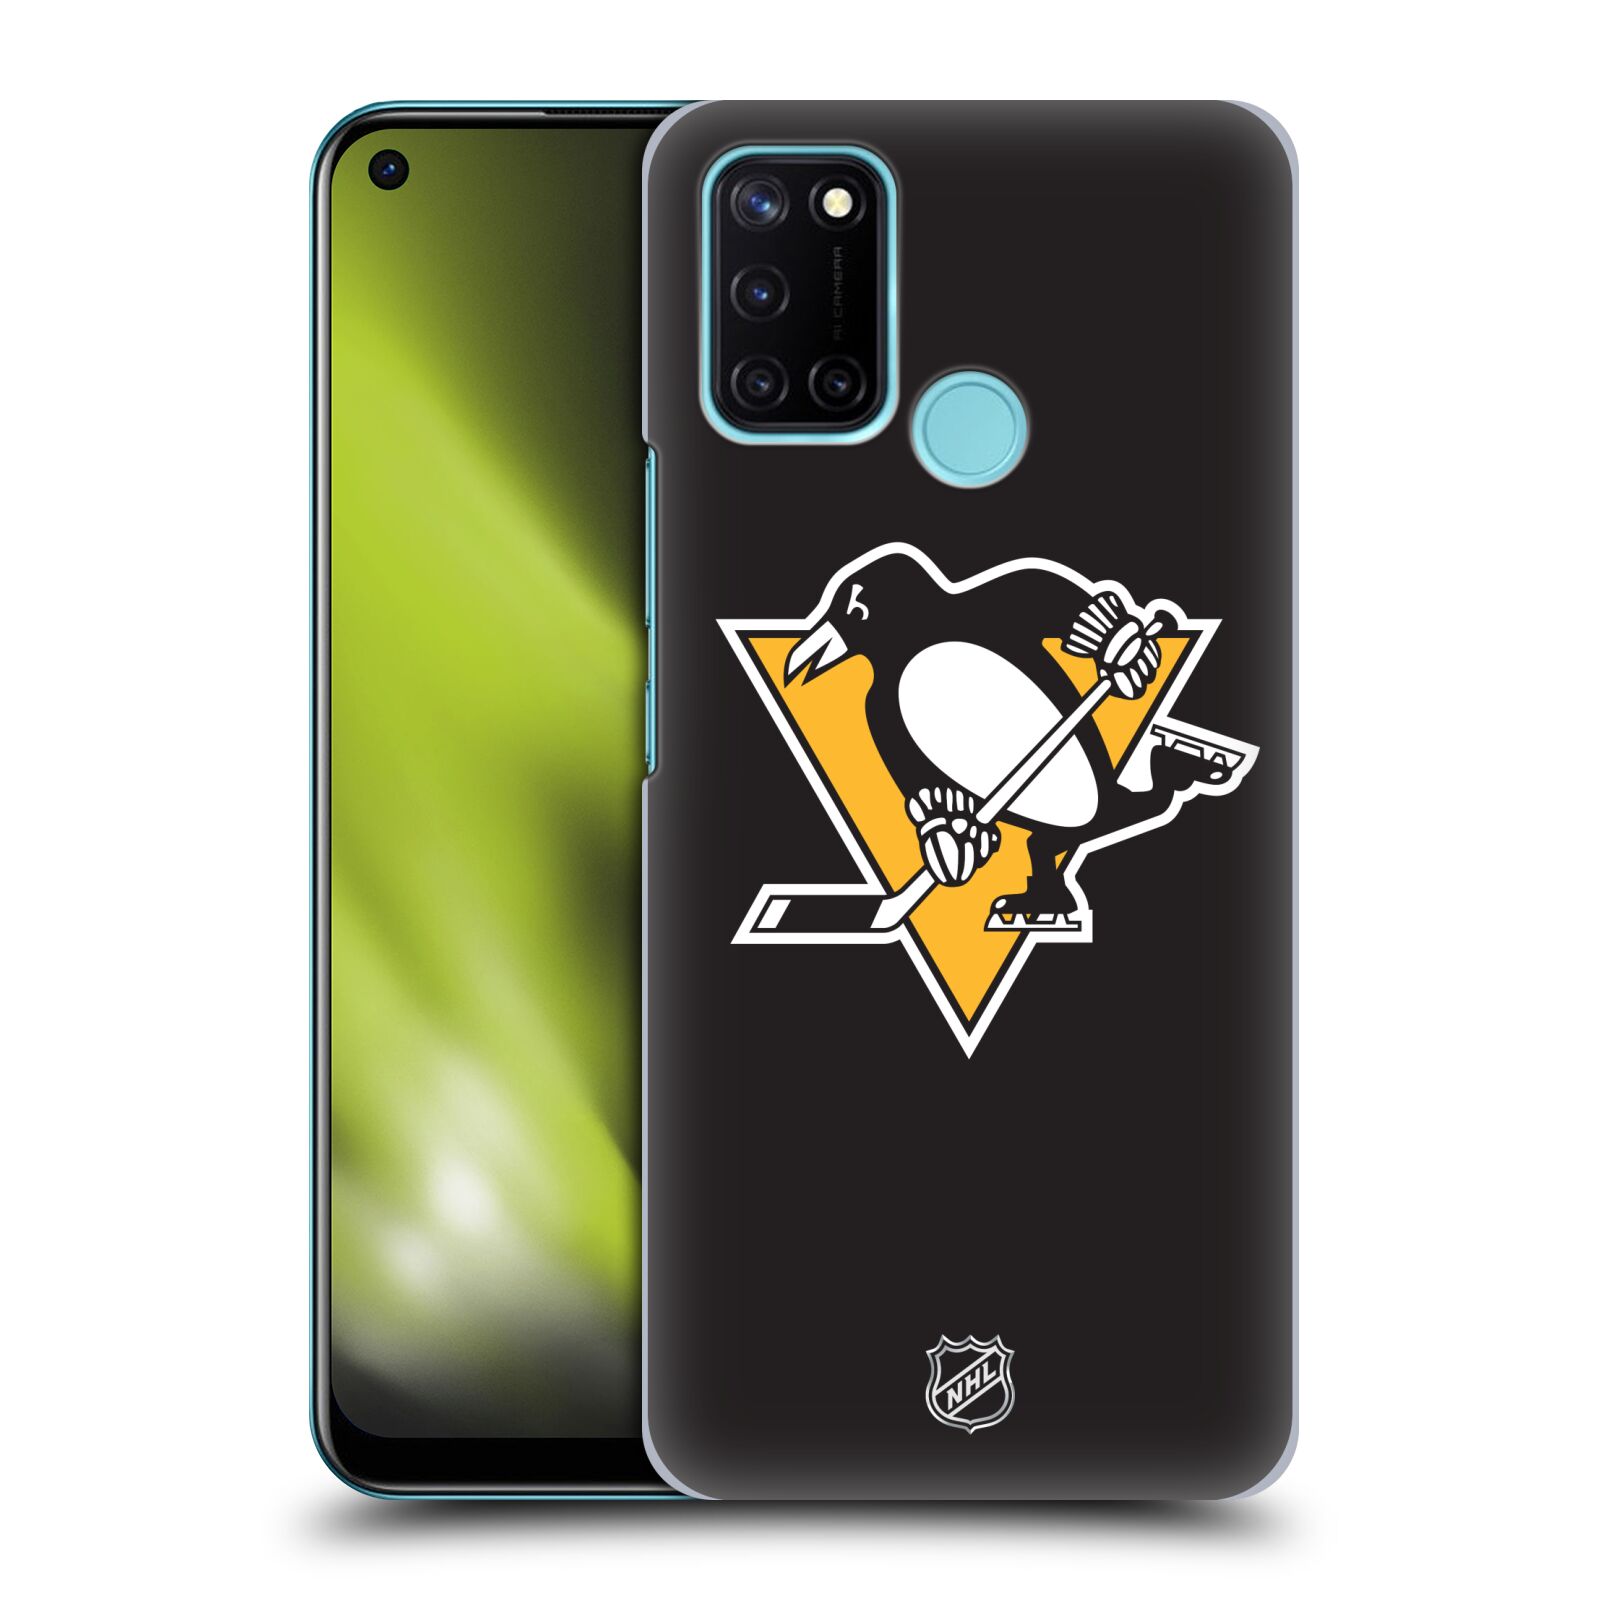 Pouzdro na mobil Realme 7i / Realme C17 - HEAD CASE - Hokej NHL - Pittsburgh Penguins - černé pozadí znak